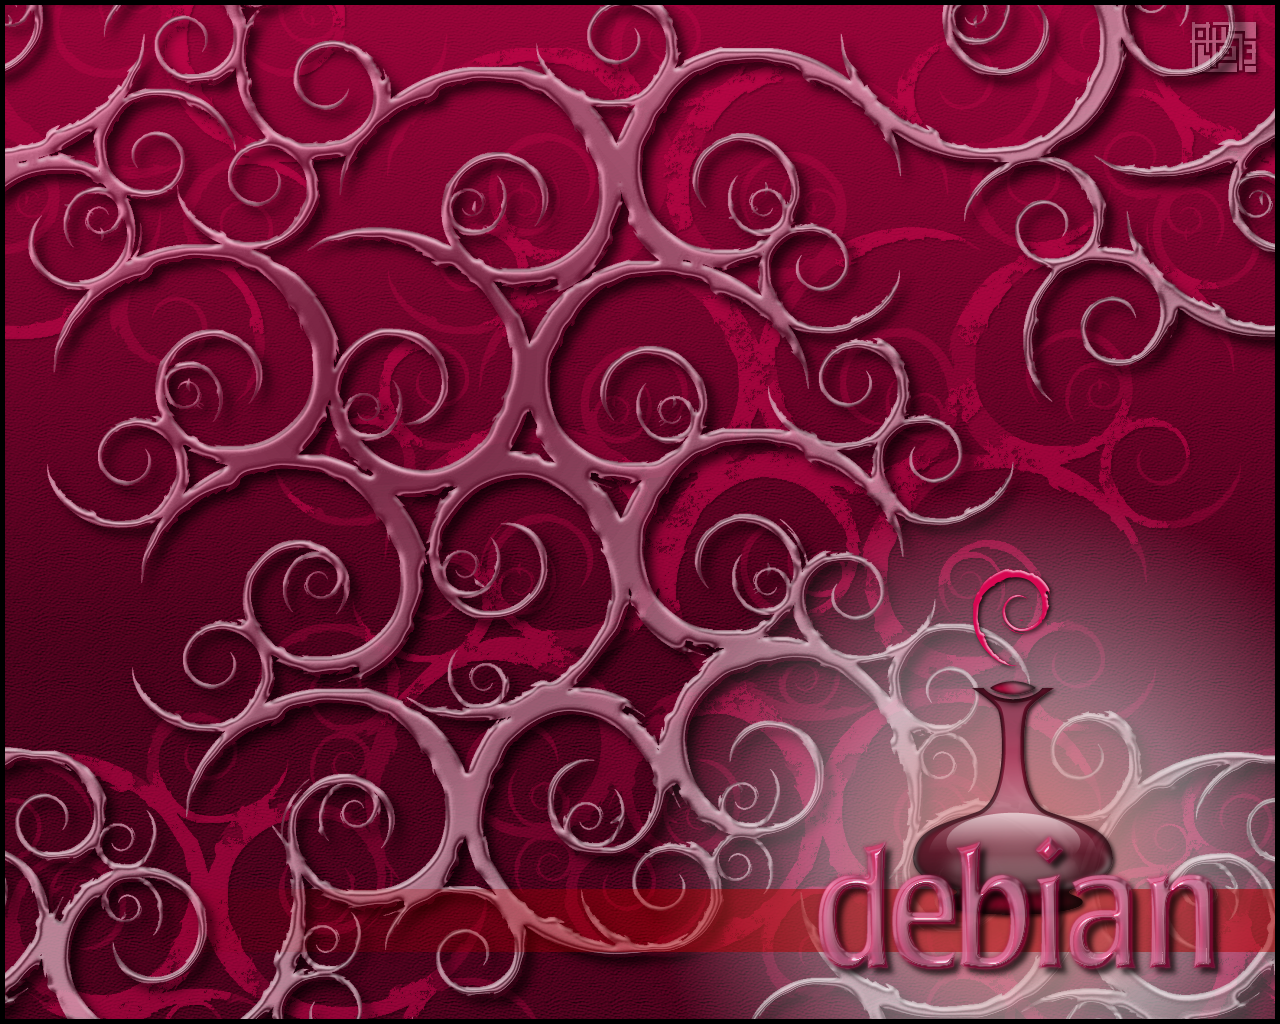 Debian wallpaper 3